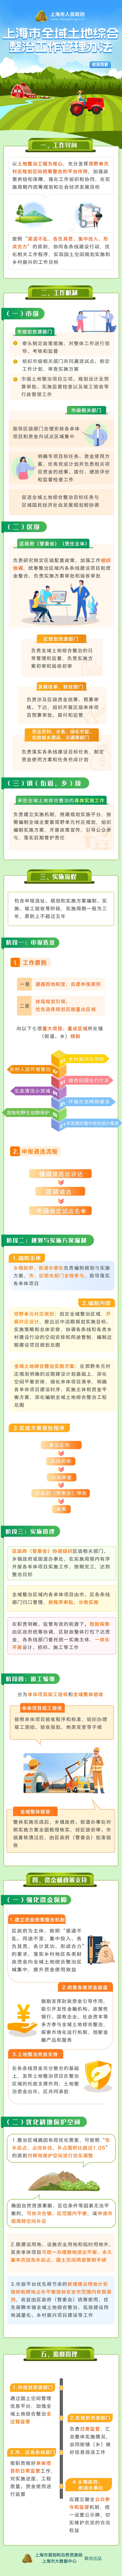 《上海市全域土地综合整治工作管理办法》政策图解.jpg